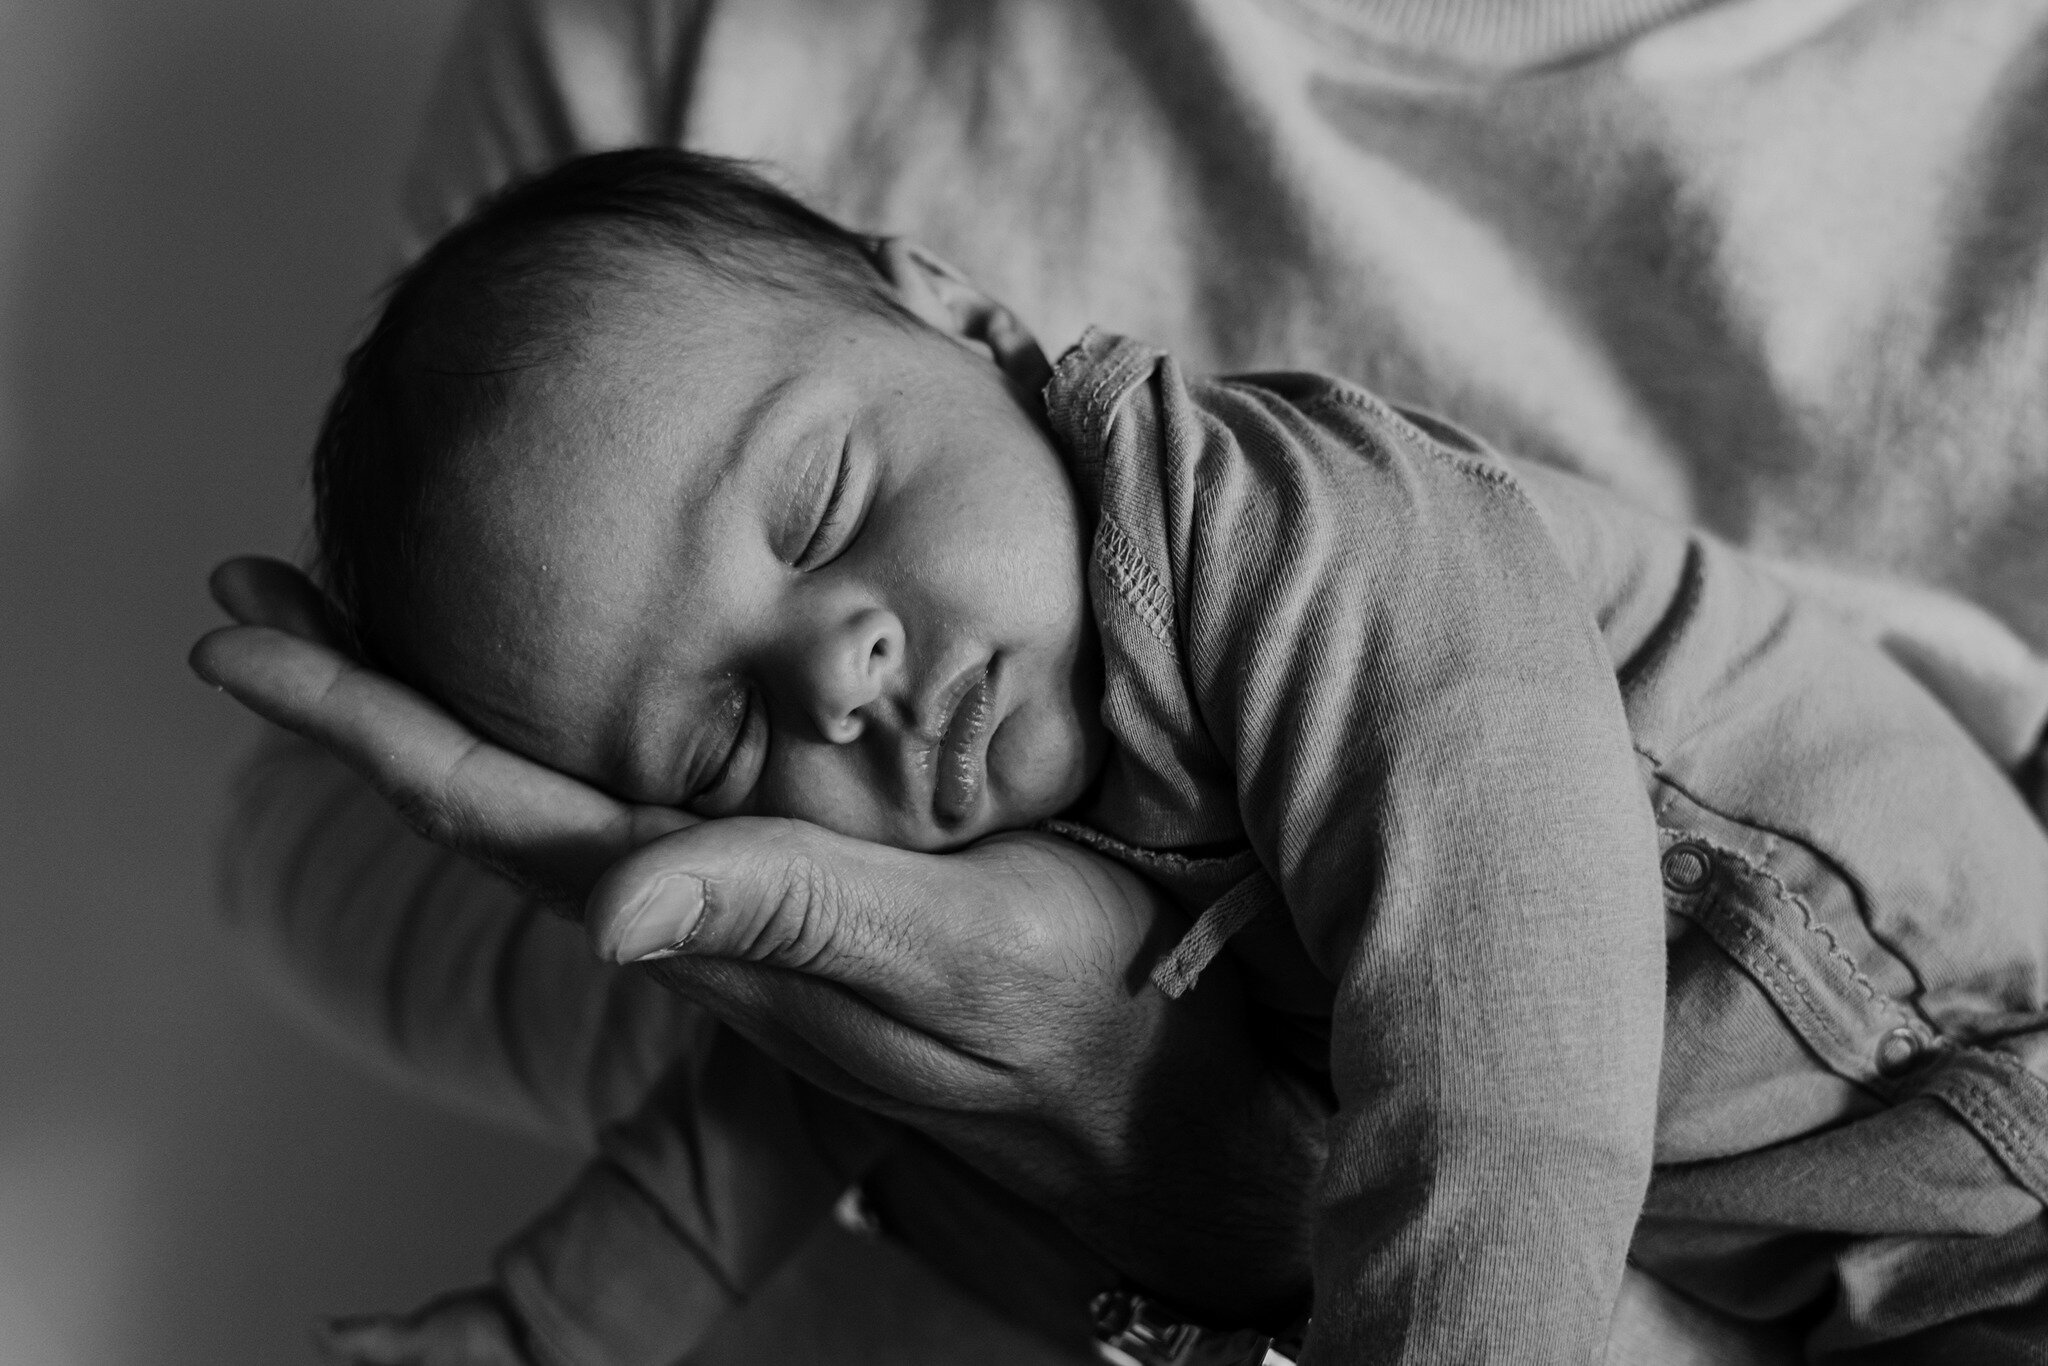 👶🏼 Welkom in de wereld, kleintje! Dit schattige meisje heeft het hart van haar ouders gestolen met haar onschuldige blik en zachte aanrakingen. 😍 

#NewbornMagic #LifesLittleMiracles #CaptureTheMoment #NewbornPhotography #NewbornLove #PreciousMome